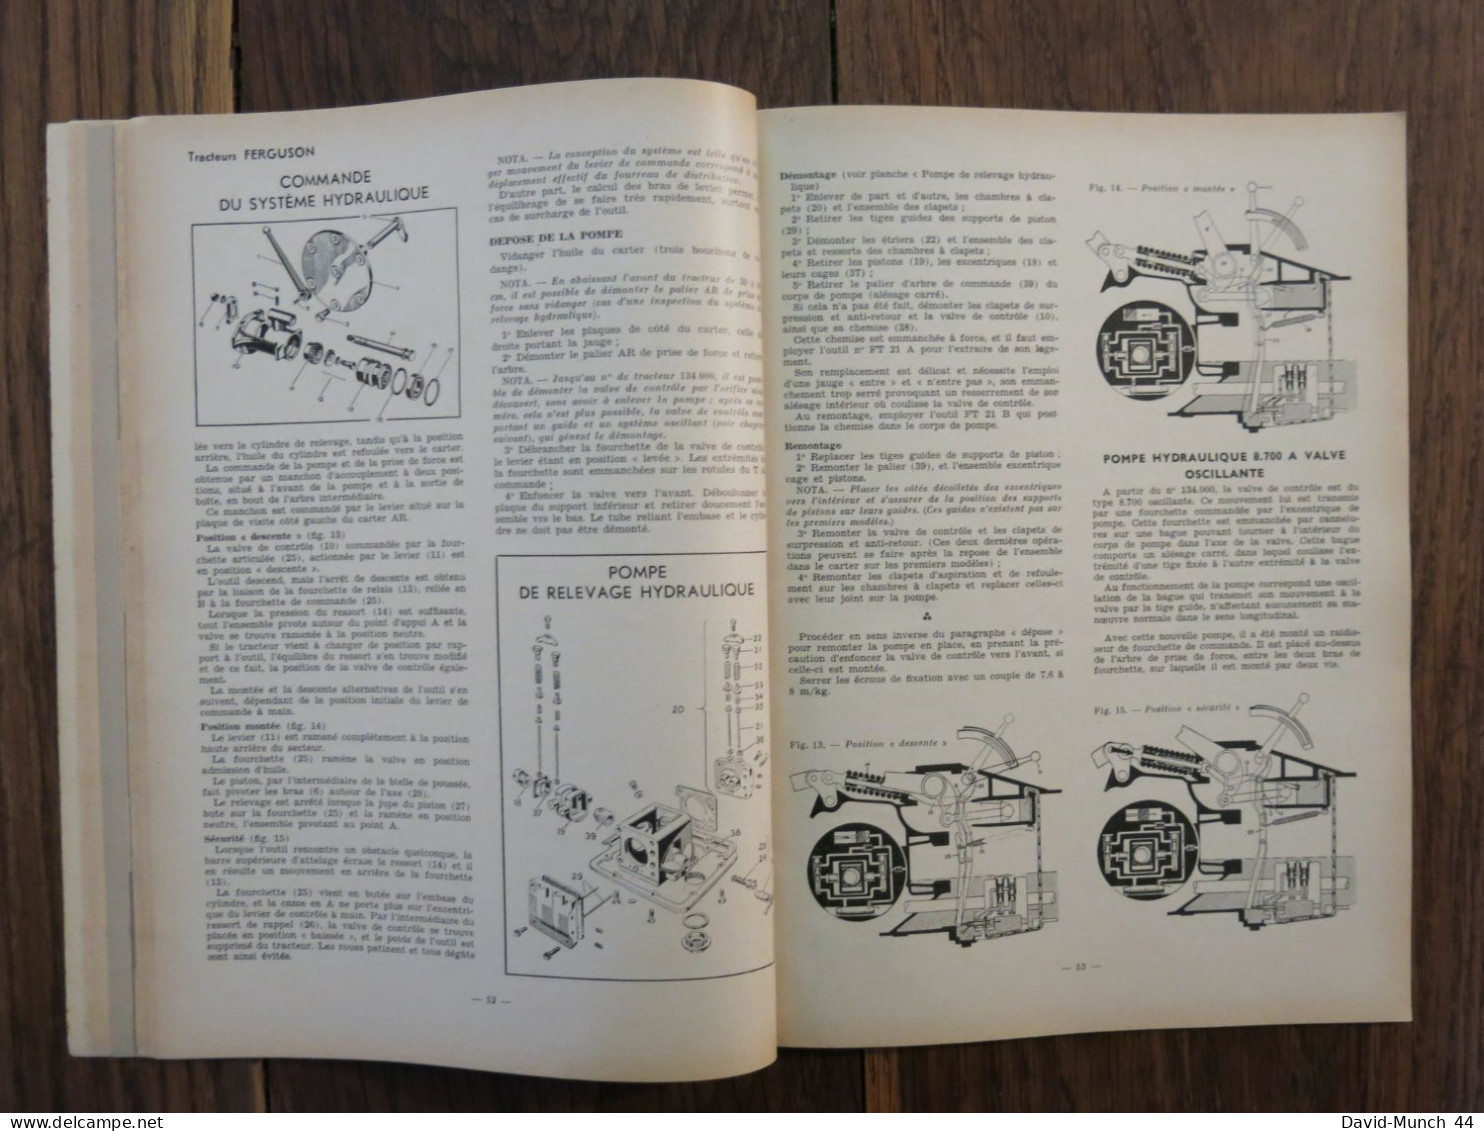 Revue technique Automobile # 93. Janvier 1954